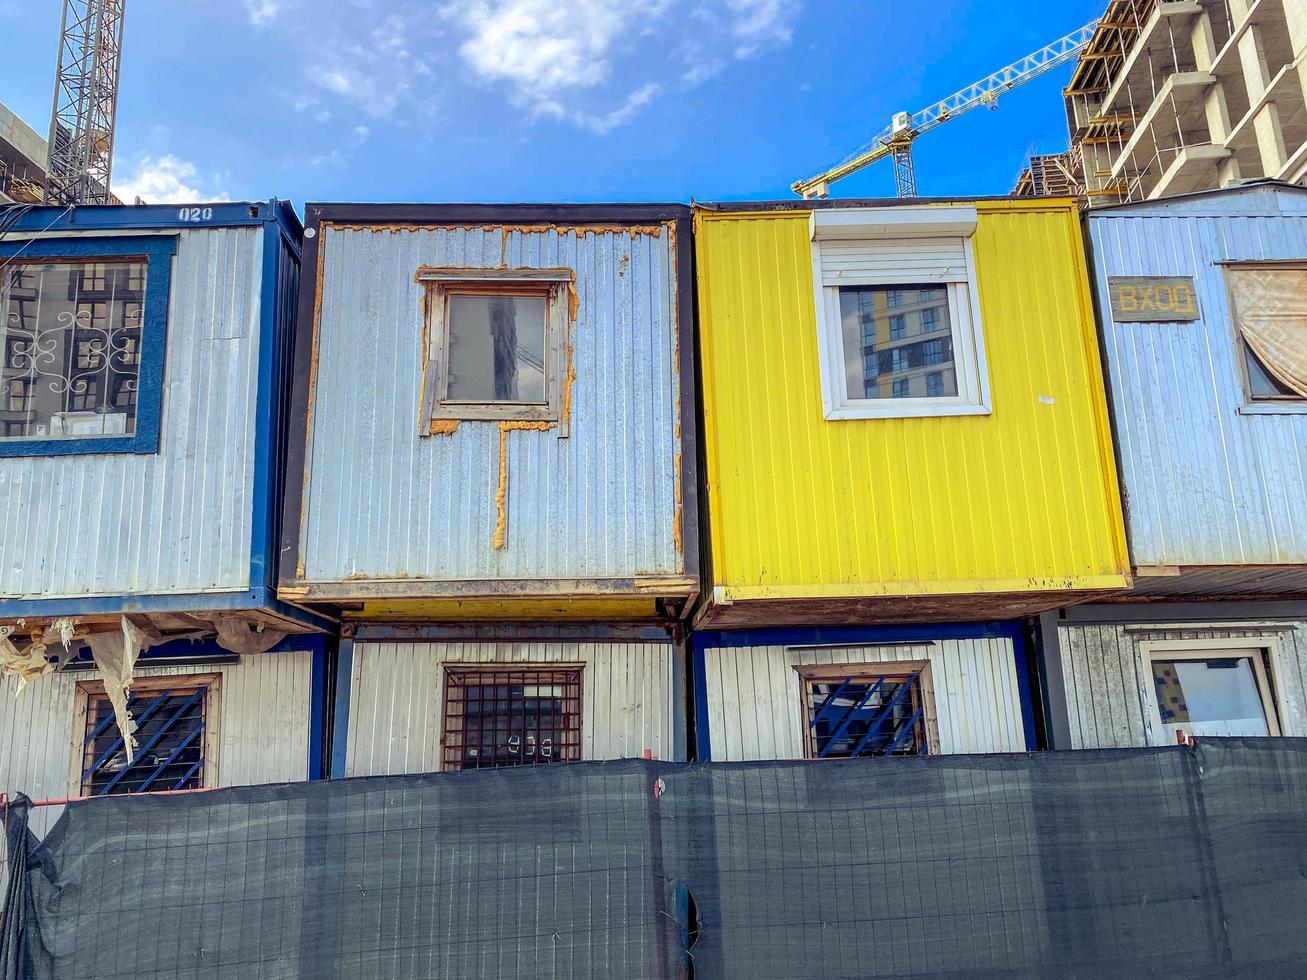 Haus für arme Leute. temporäre Wohngebäude. Häuser für Bauherren aus Waggons mit Fenstern in zwei Reihen. helle, gelb und grau gestrichene Blockhäuser foto